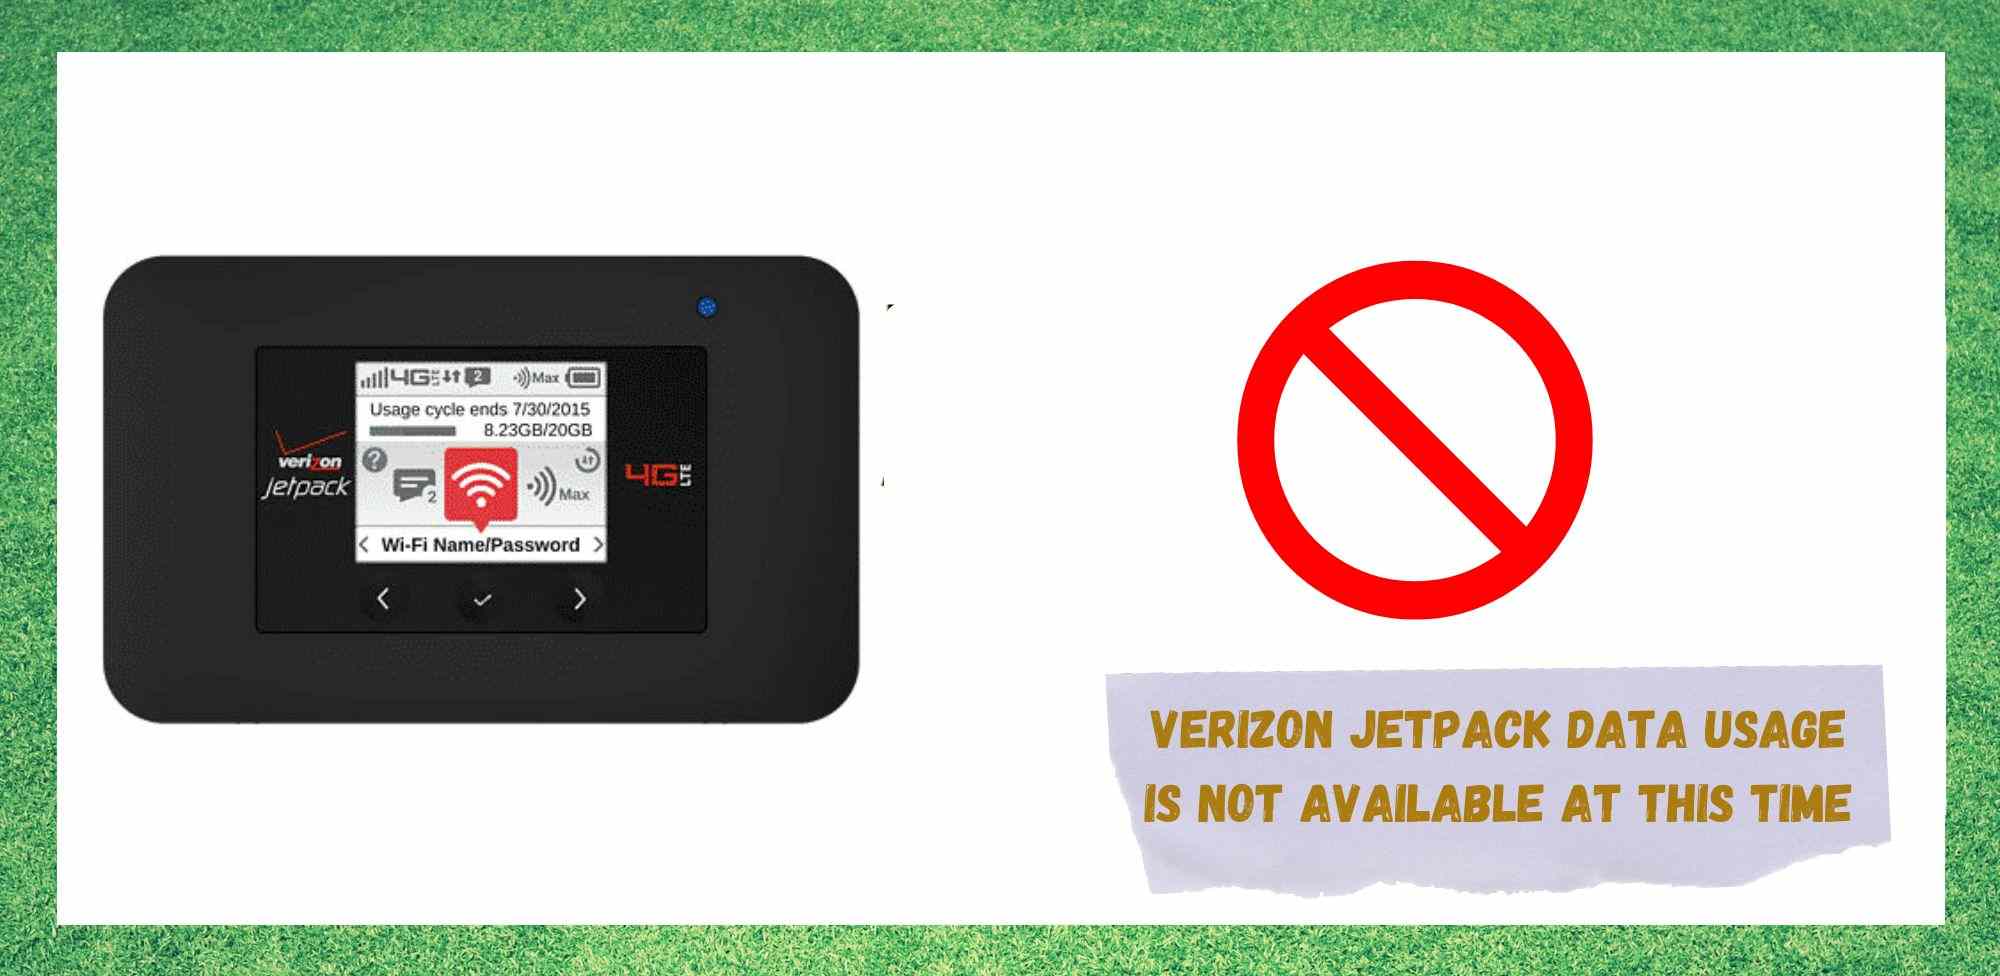 7 спосабаў выправіць выкарыстанне дадзеных Verizon Jetpack зараз недаступныя